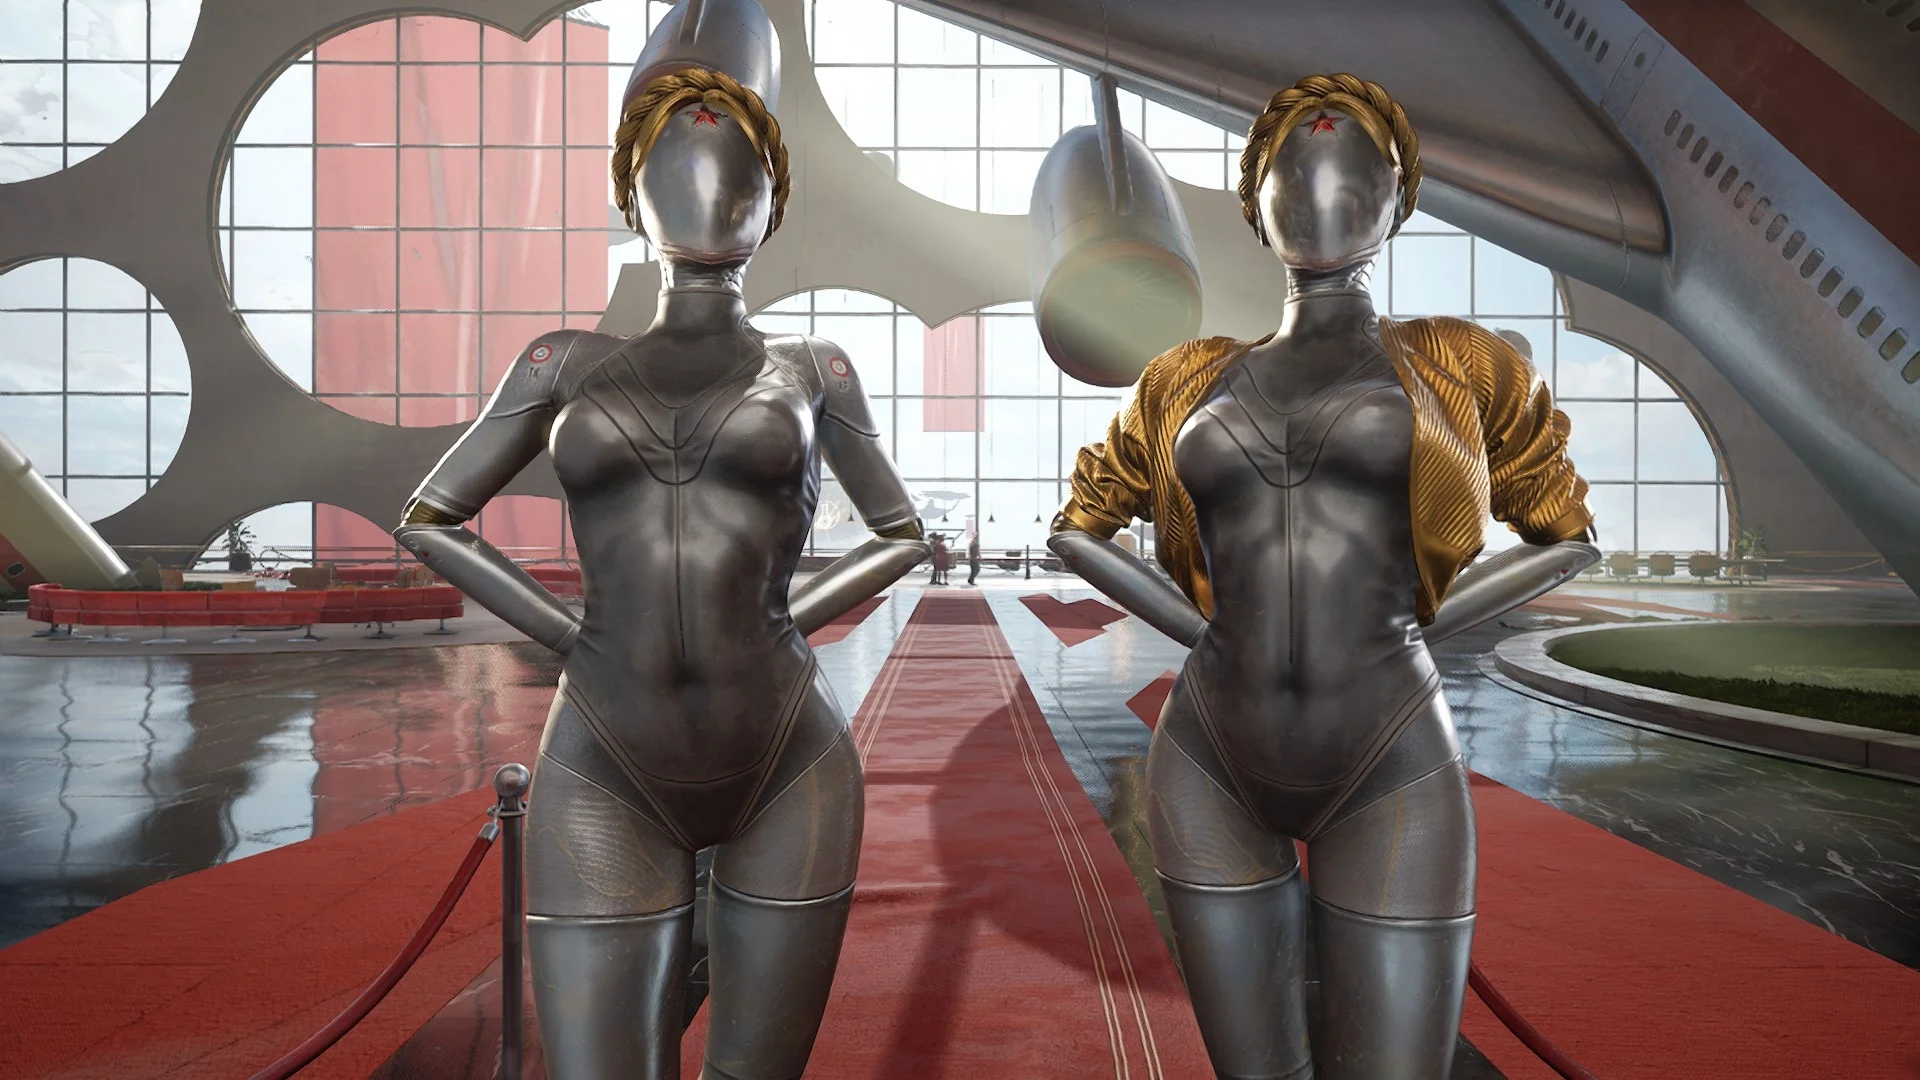 Создатели Atomic Heart презентовали эксклюзивный мерч к игре – статуэтку Близняшек